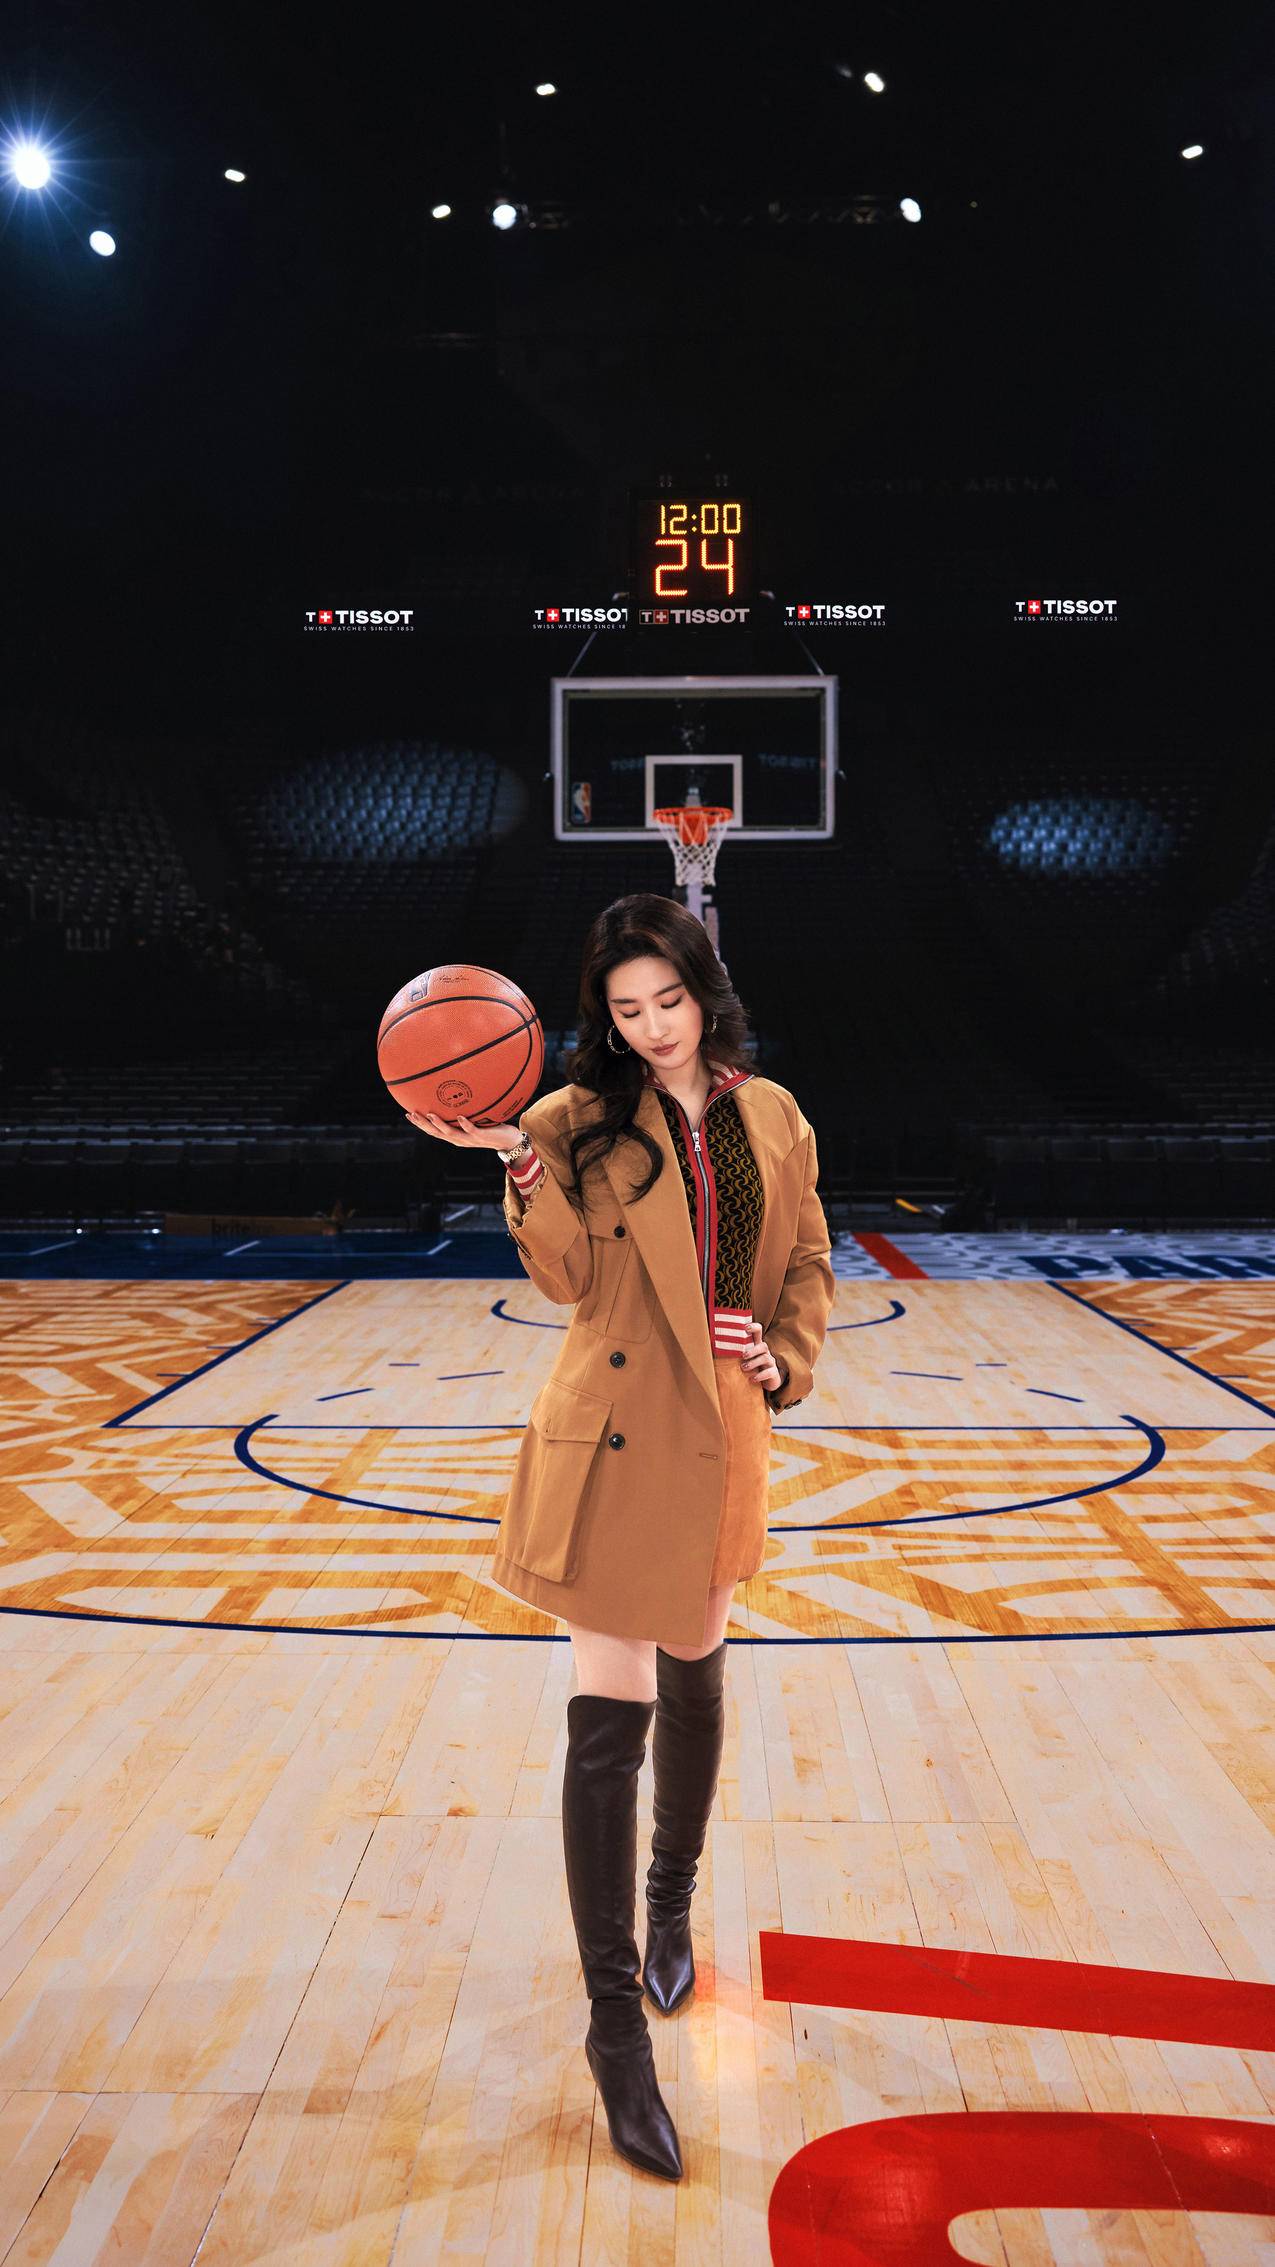 刘亦菲 篮球 4k美女手机壁纸竖屏